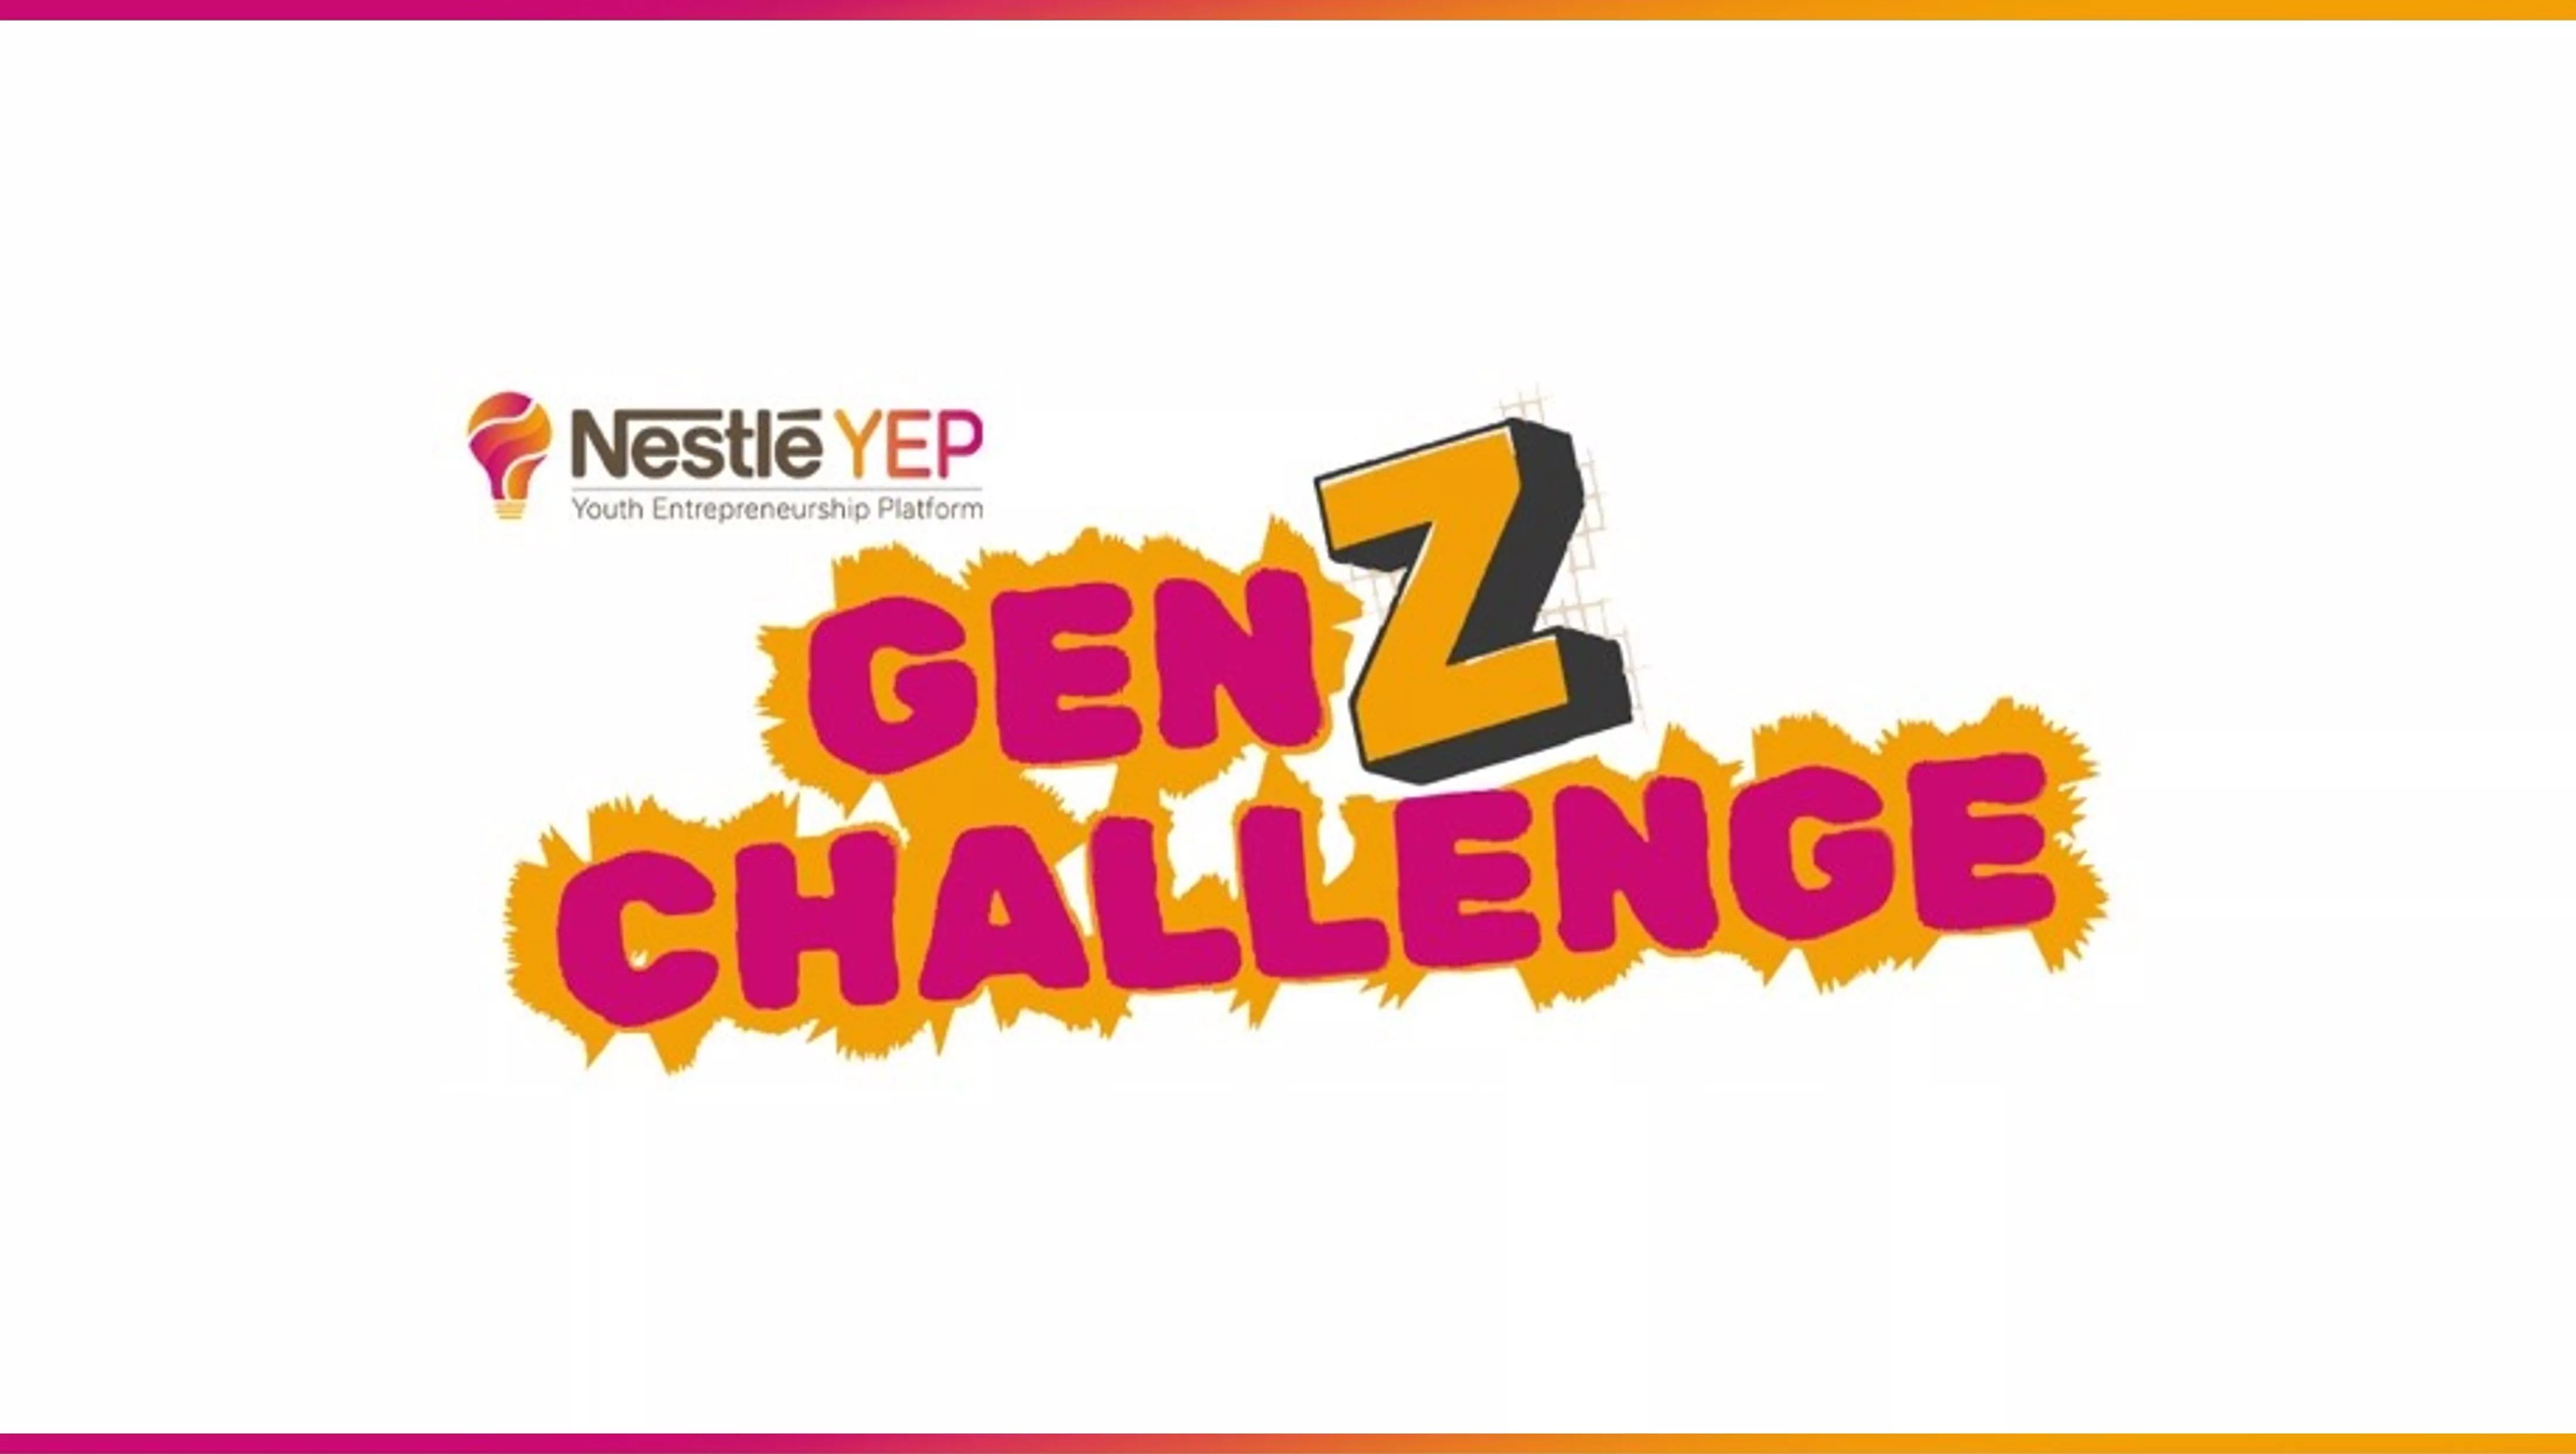 Nestlé GenZ Challenge